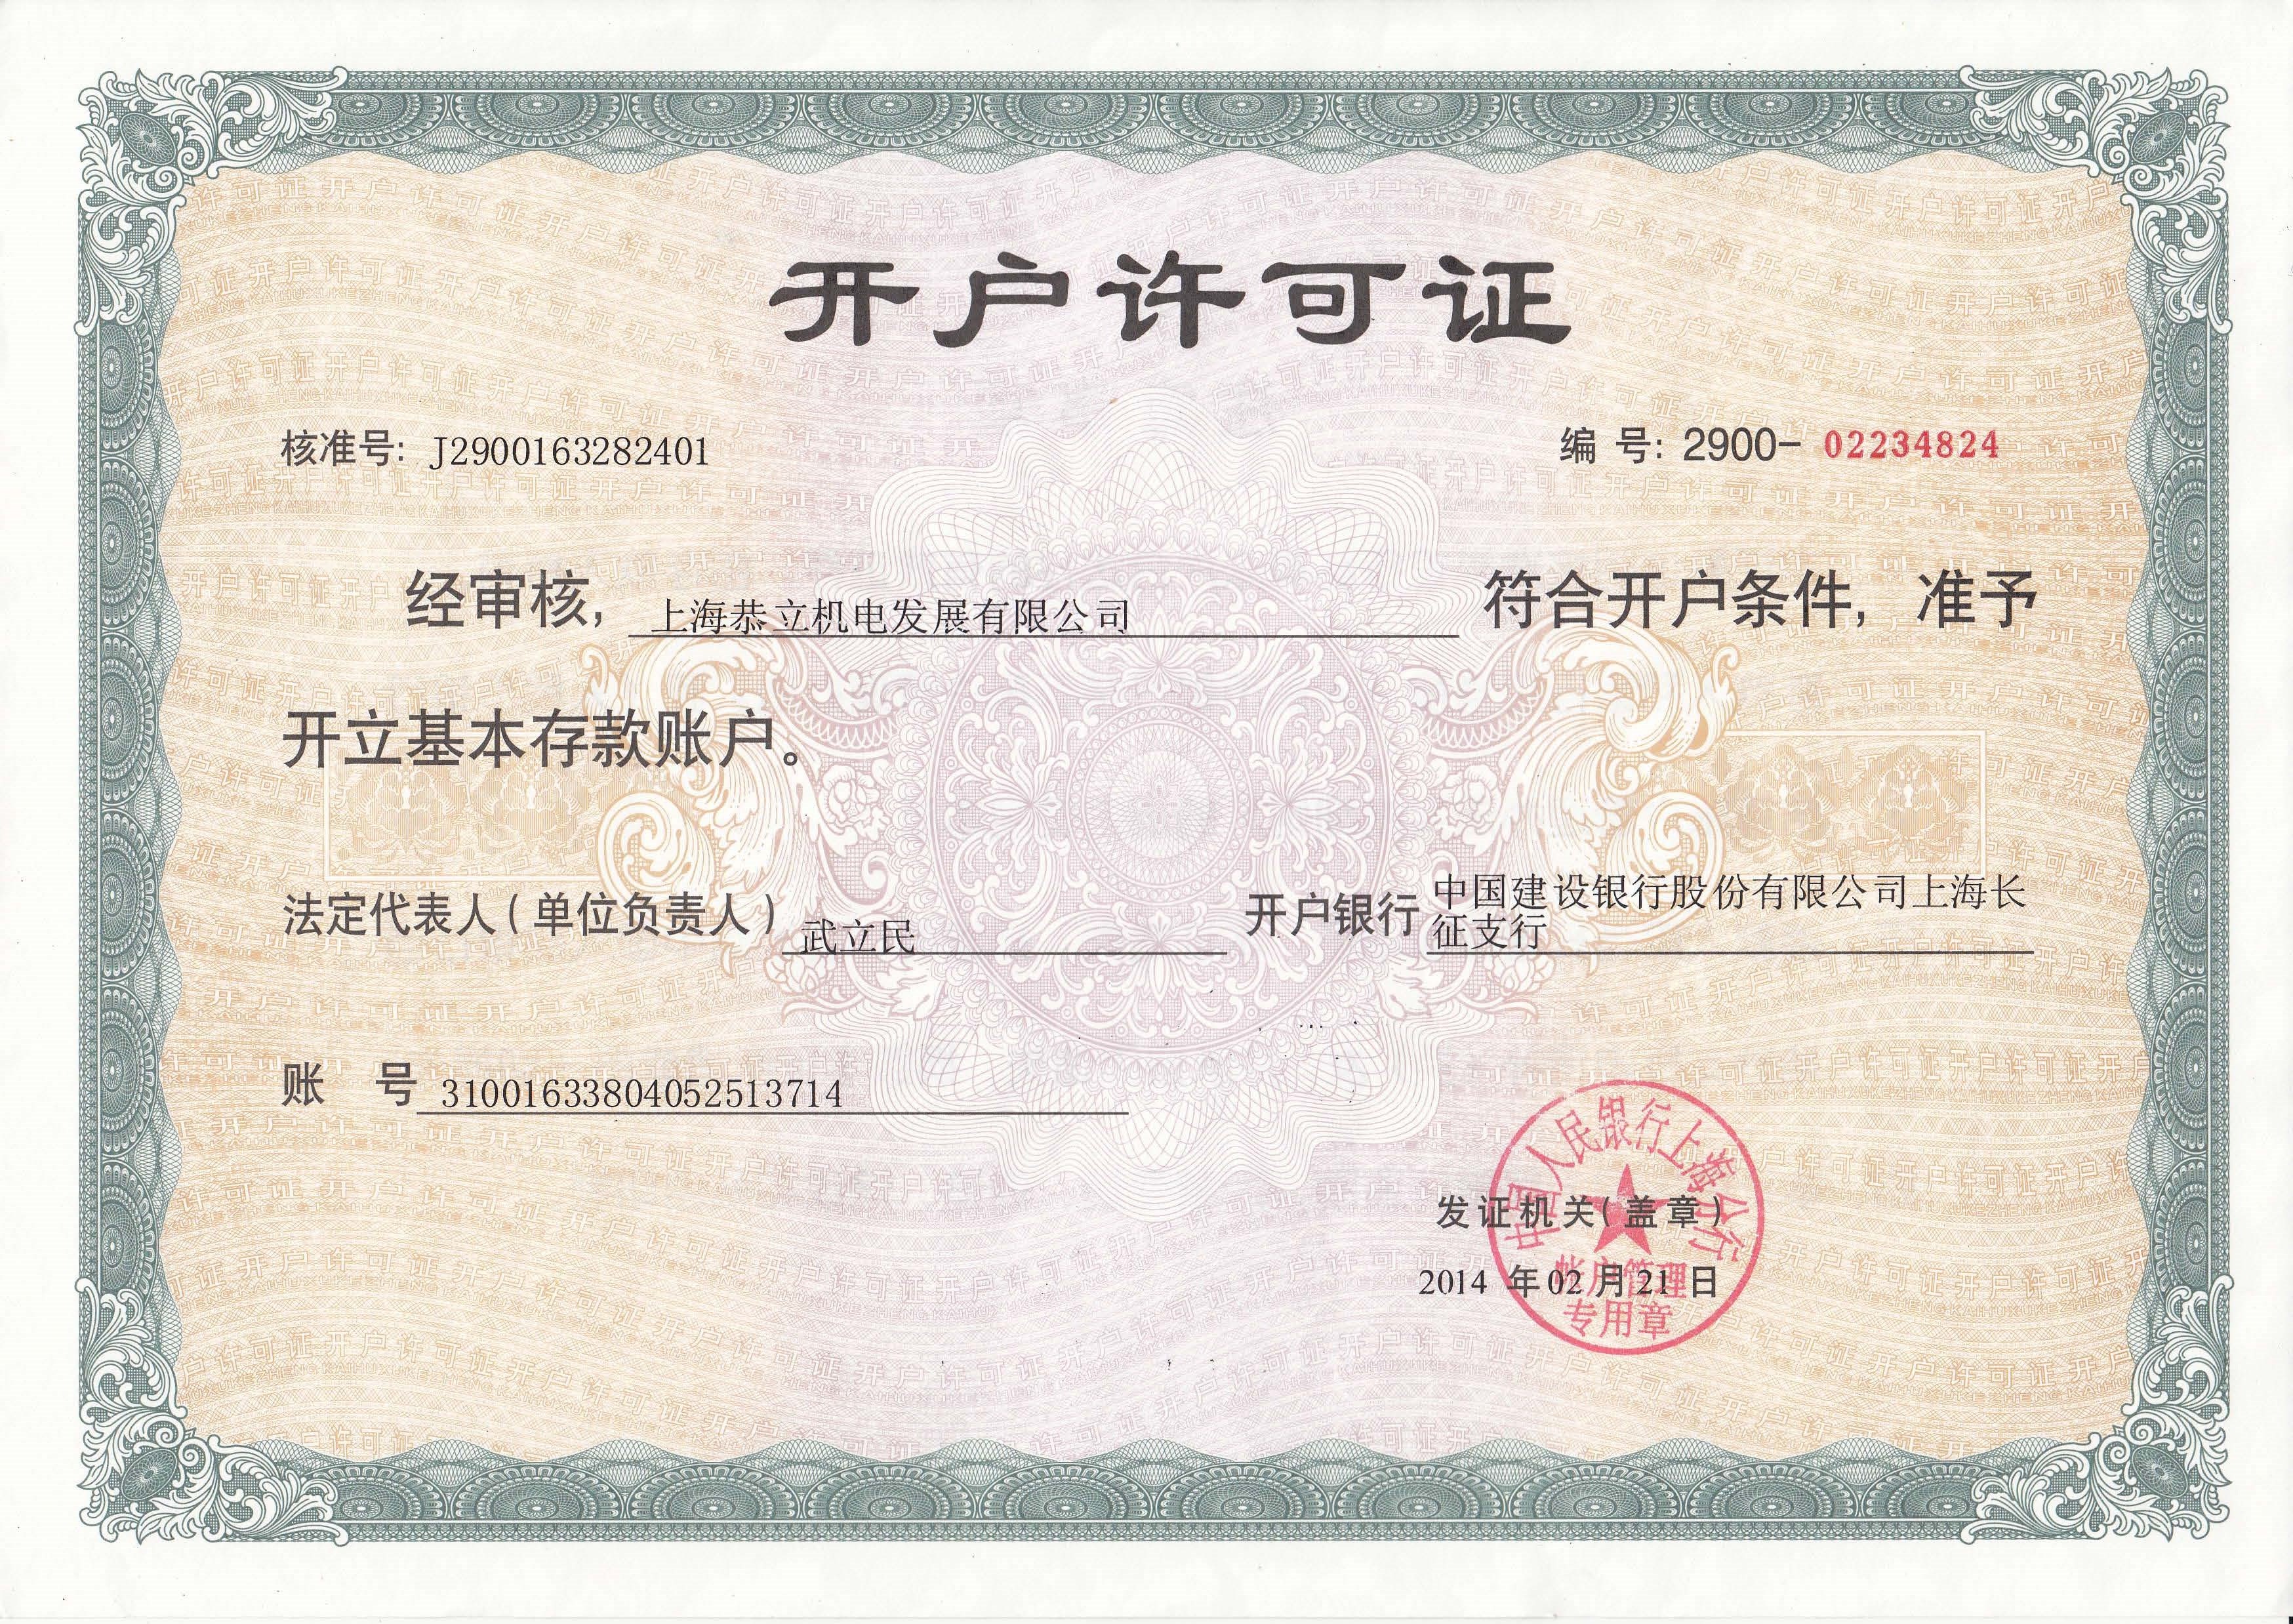 上海恭立开户许可证